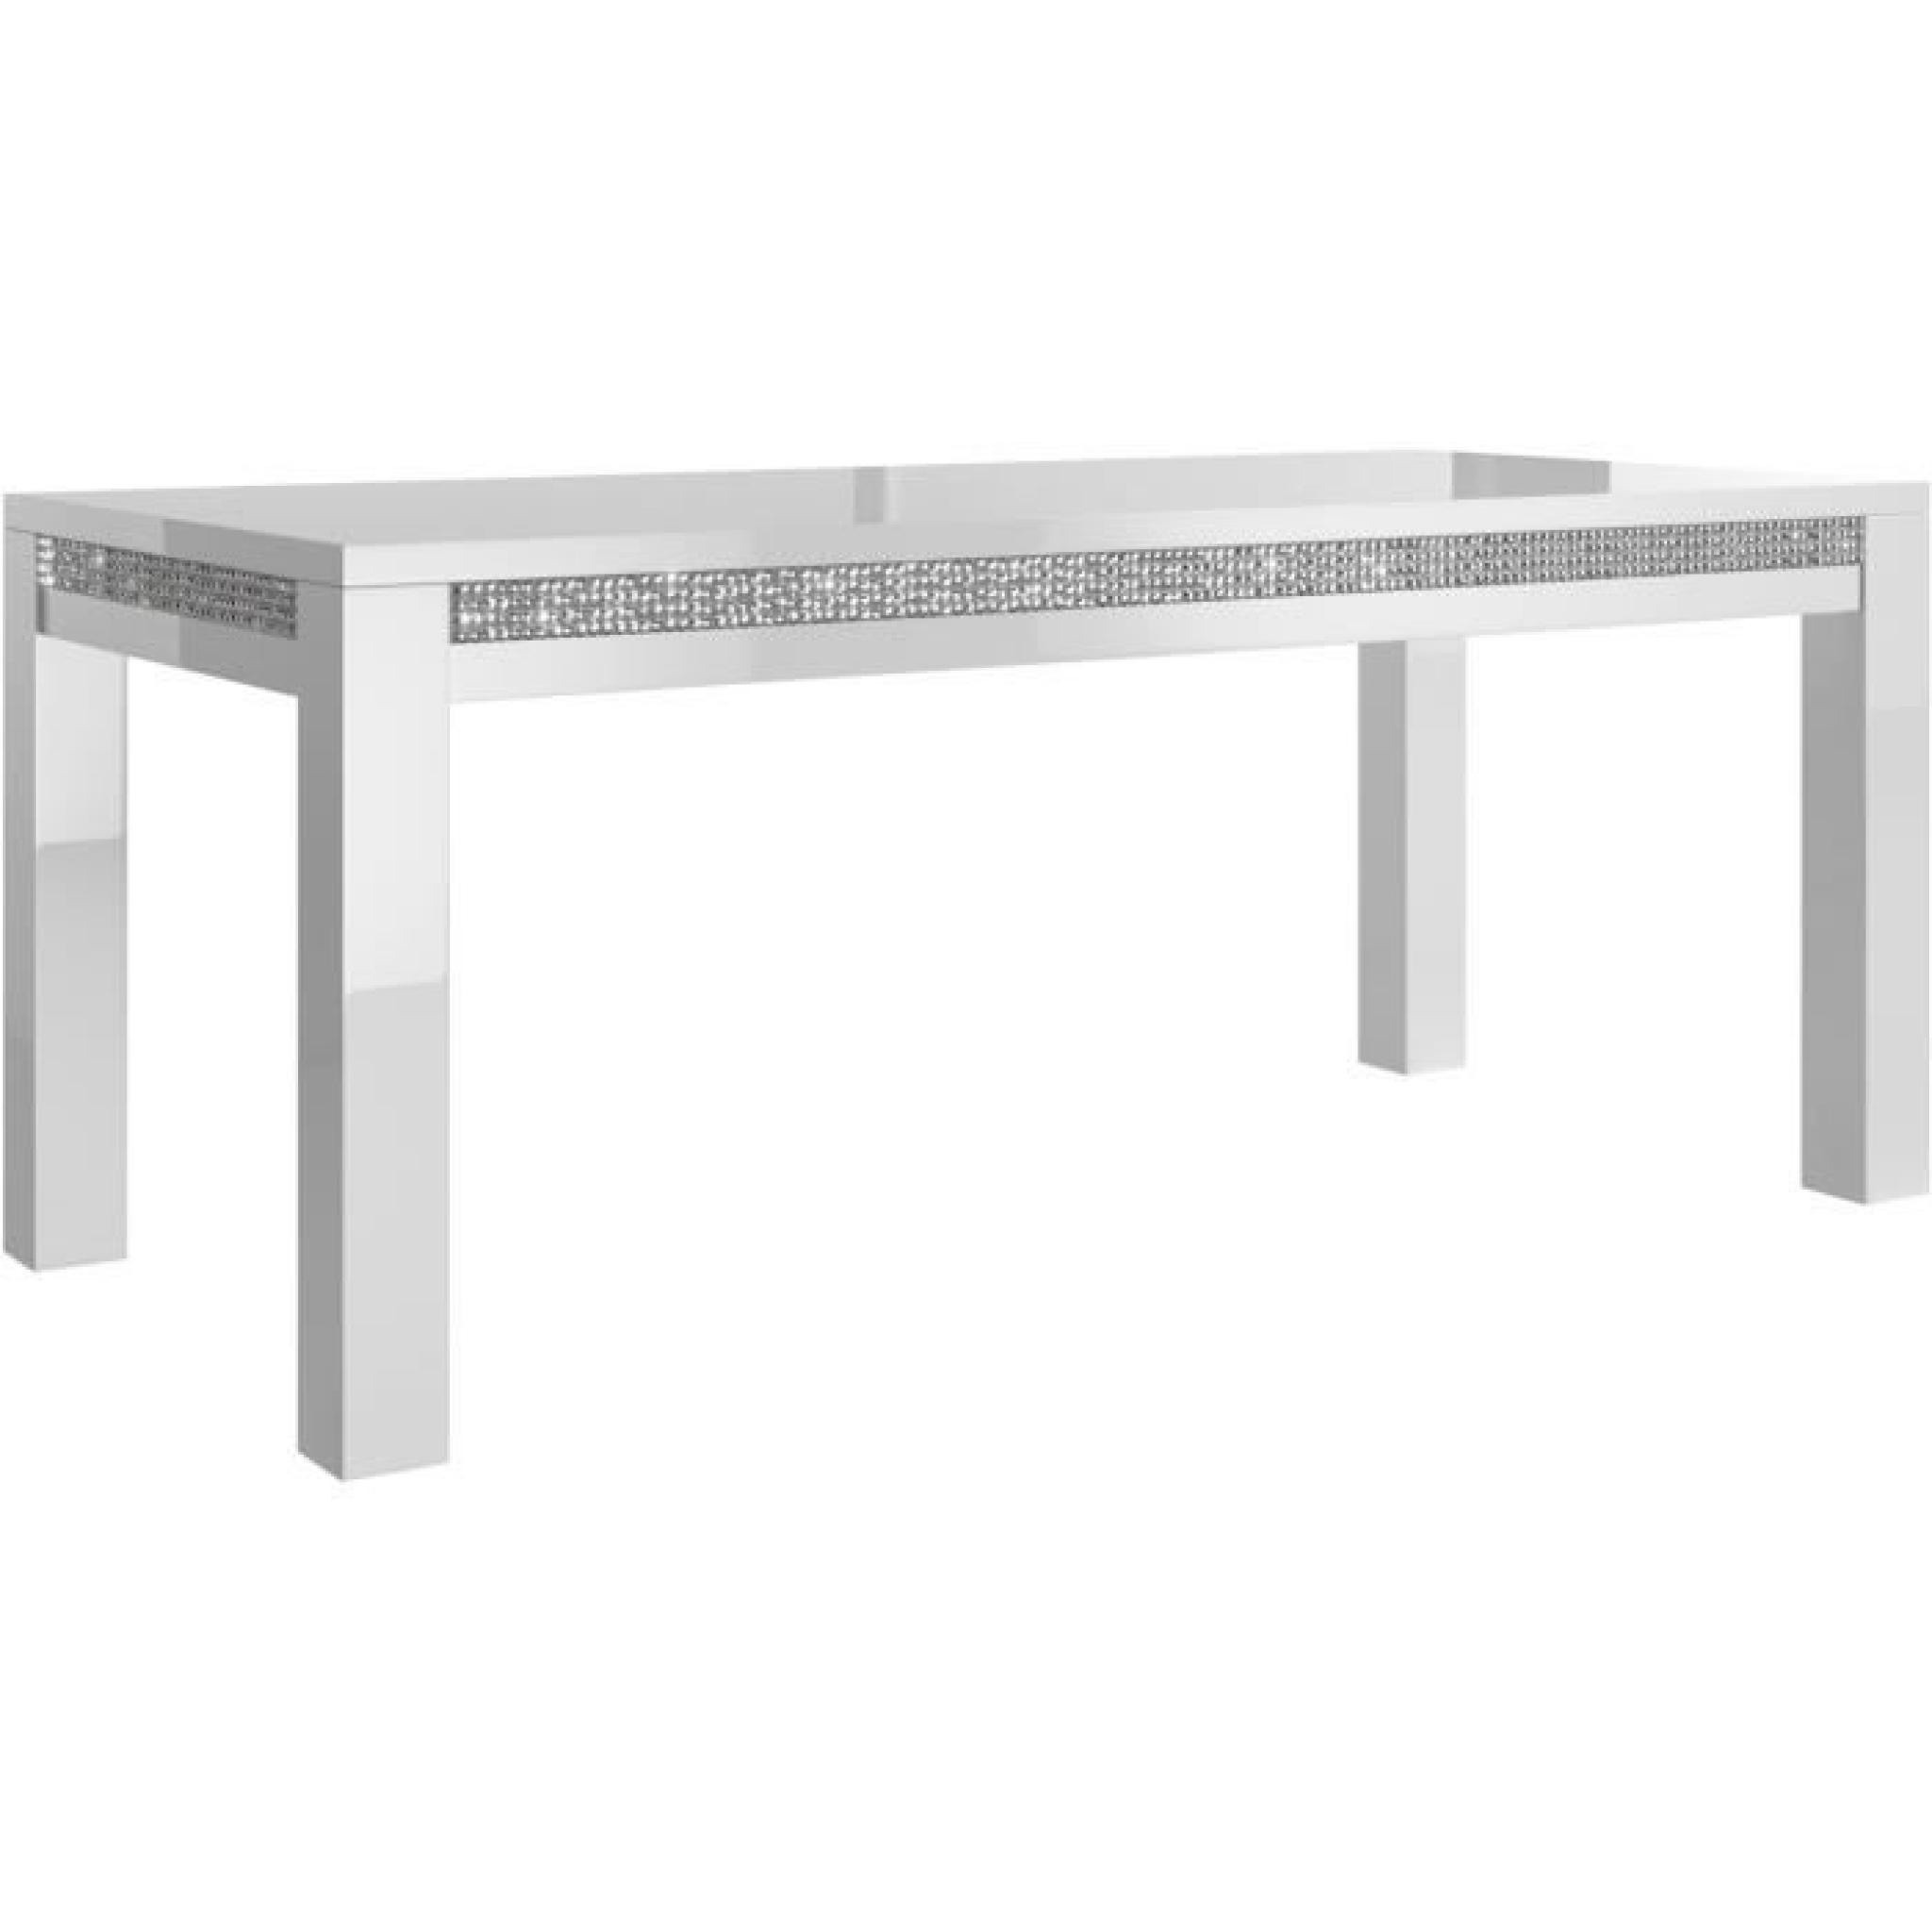 Table à manger 160 cm blanc + 4 chaises ultra design blanc modele Prestige pas cher